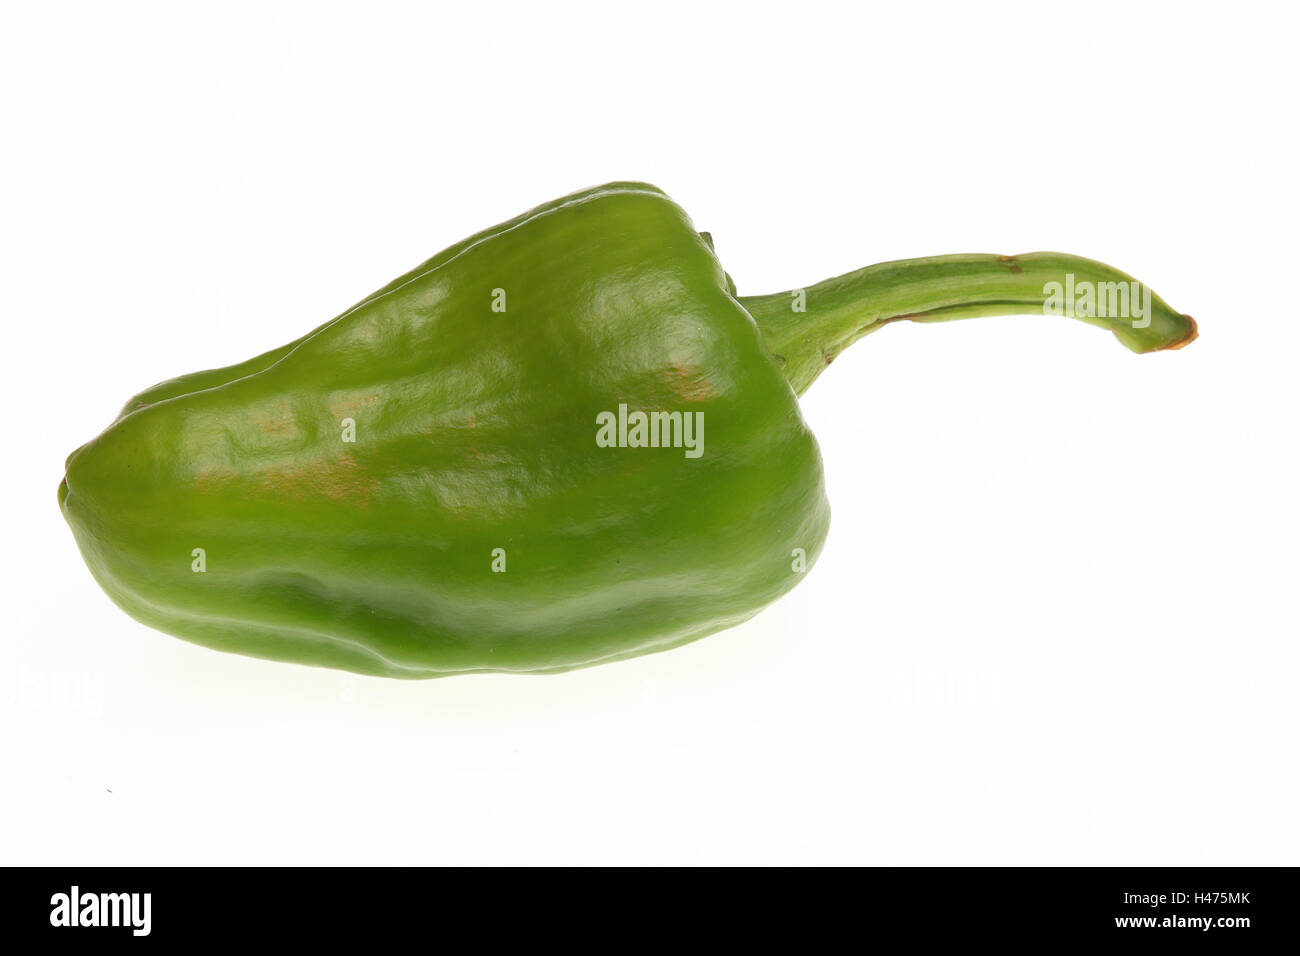 green Jalapeno, chili pepper, Capsicum annuum Stock Photo